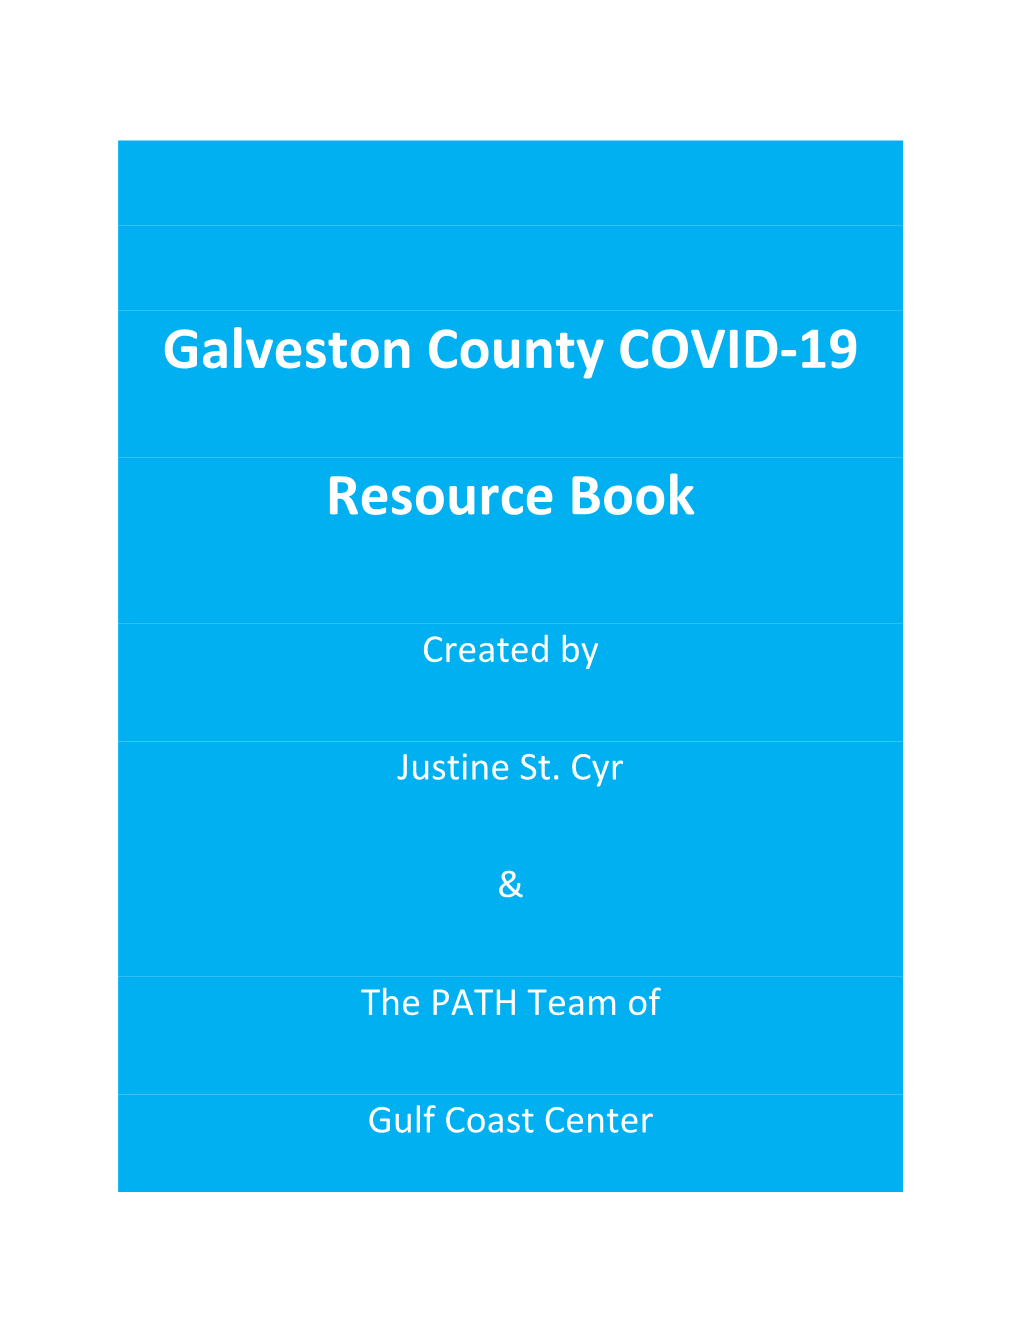 Galveston County COVID-19 Resource Book